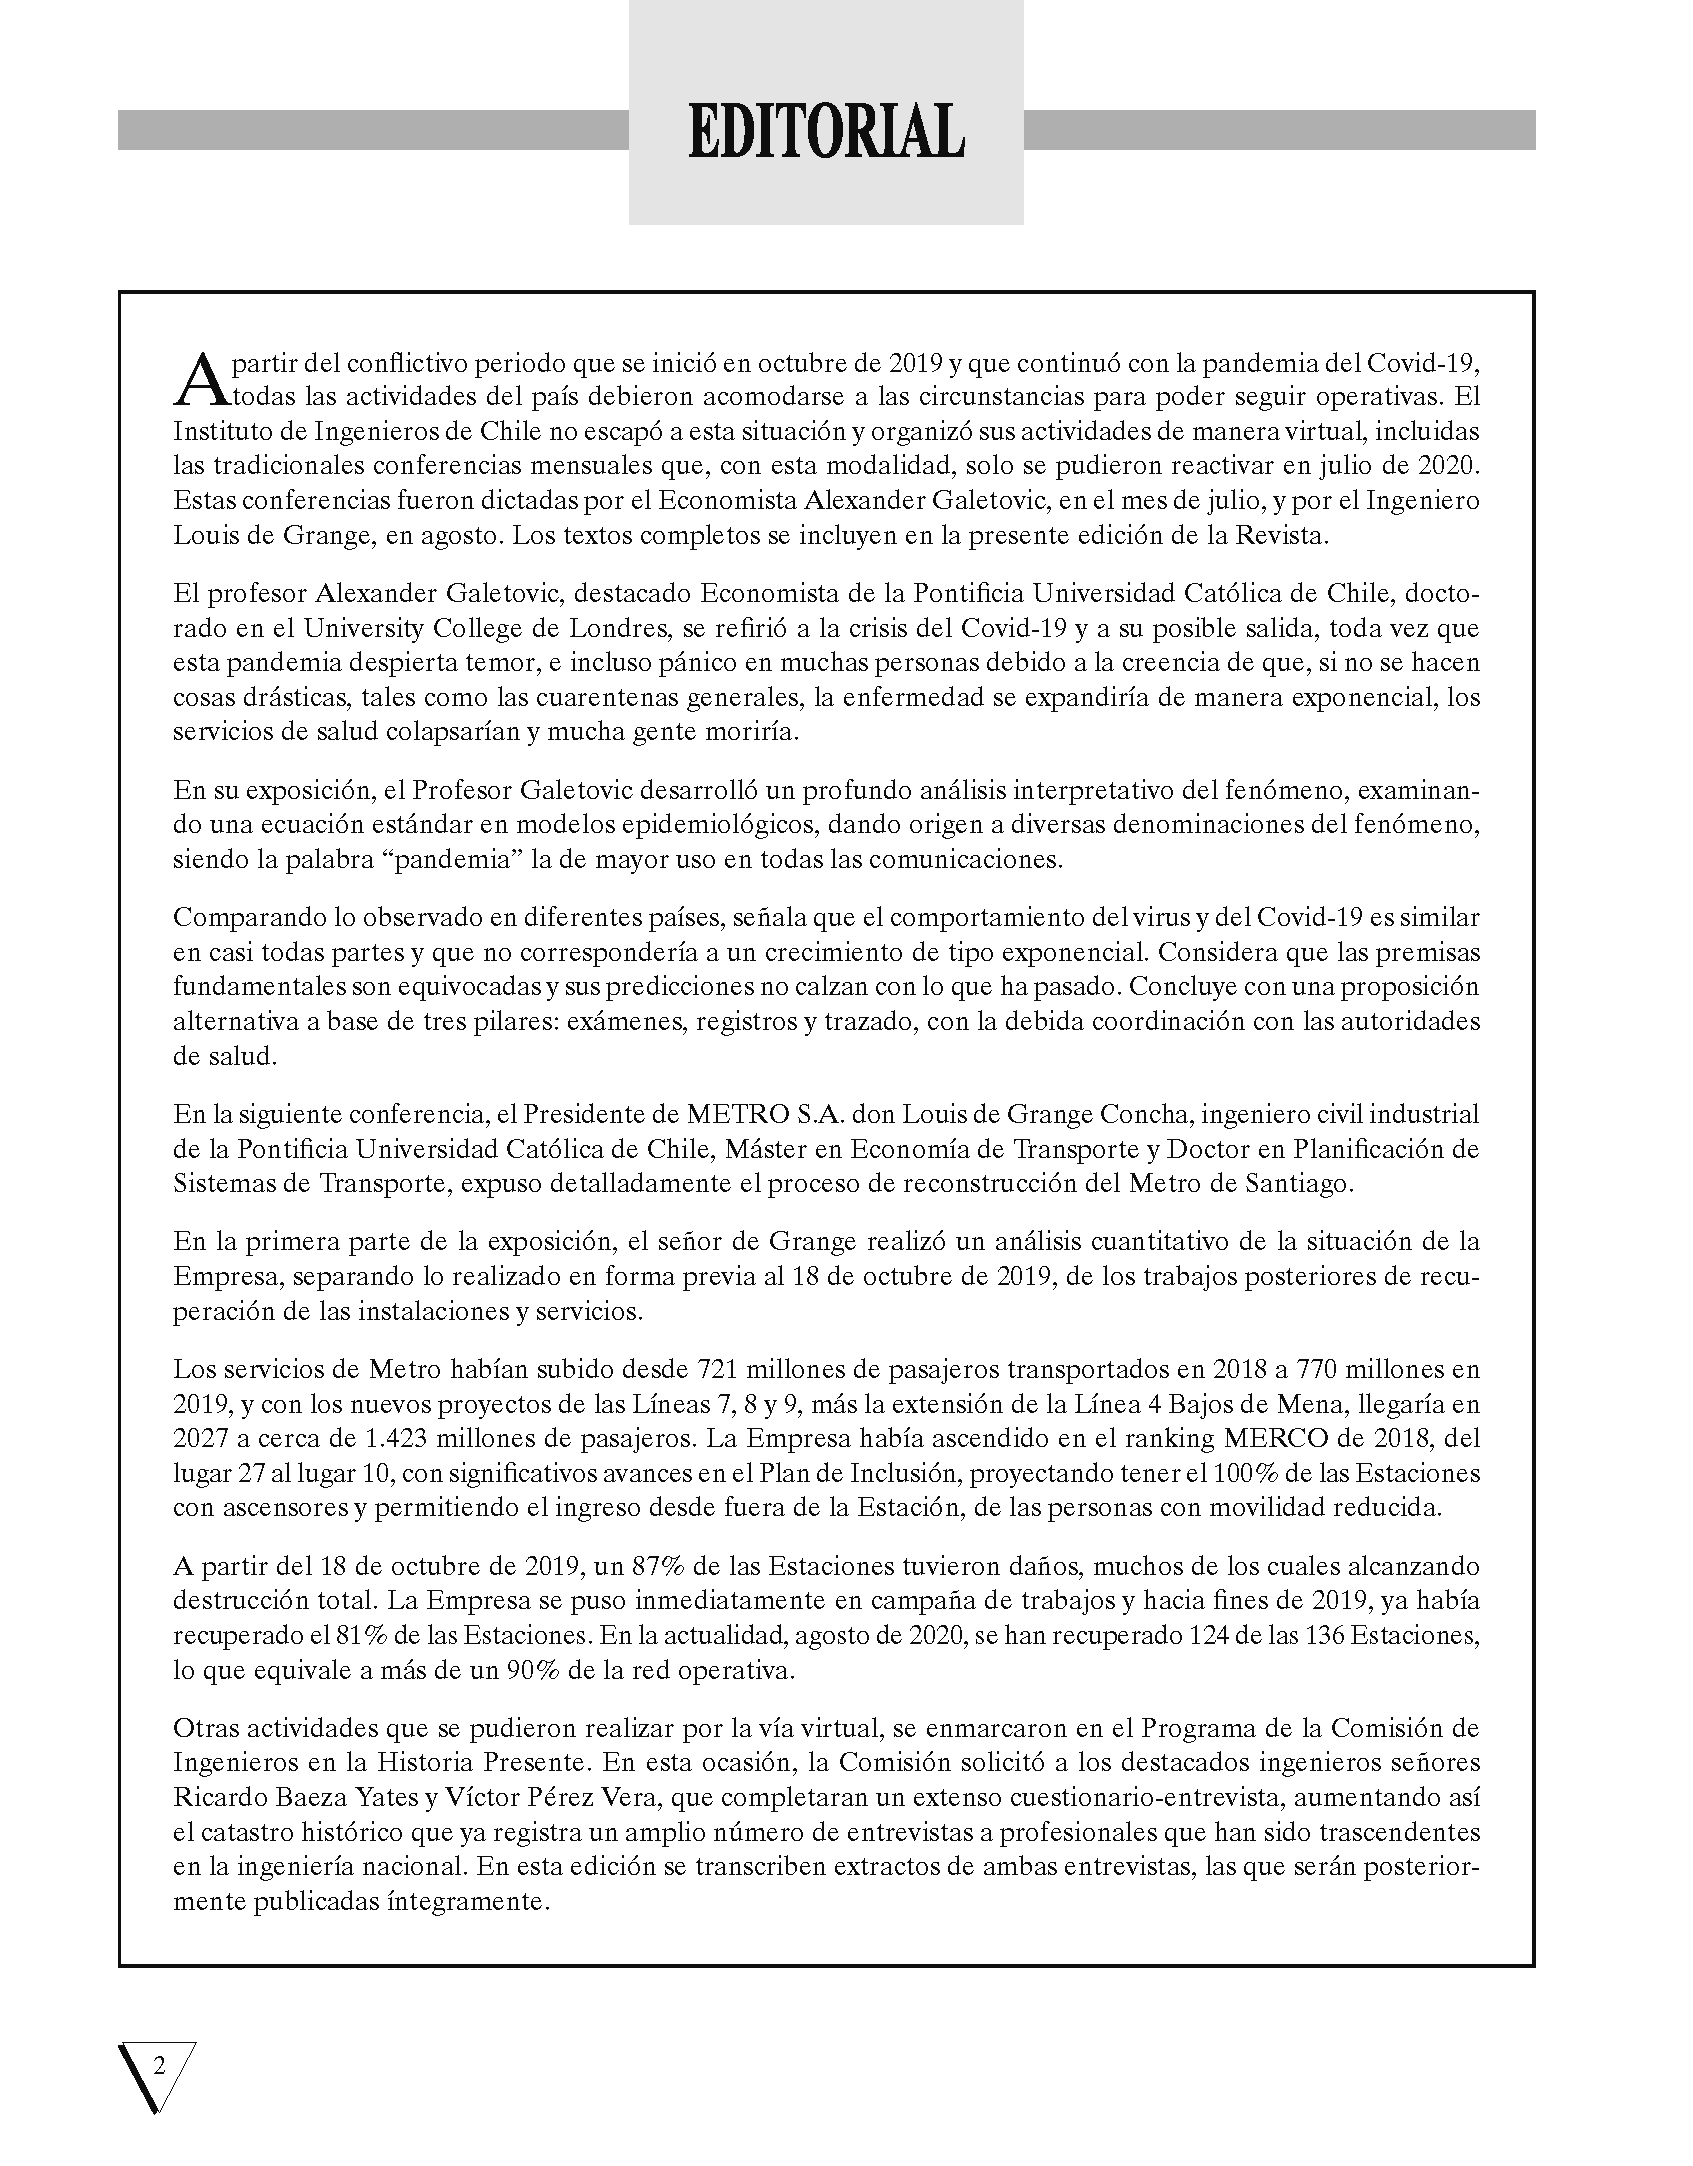 Revista_Anales_490-agosto de 2020 DEF_Página_04.png